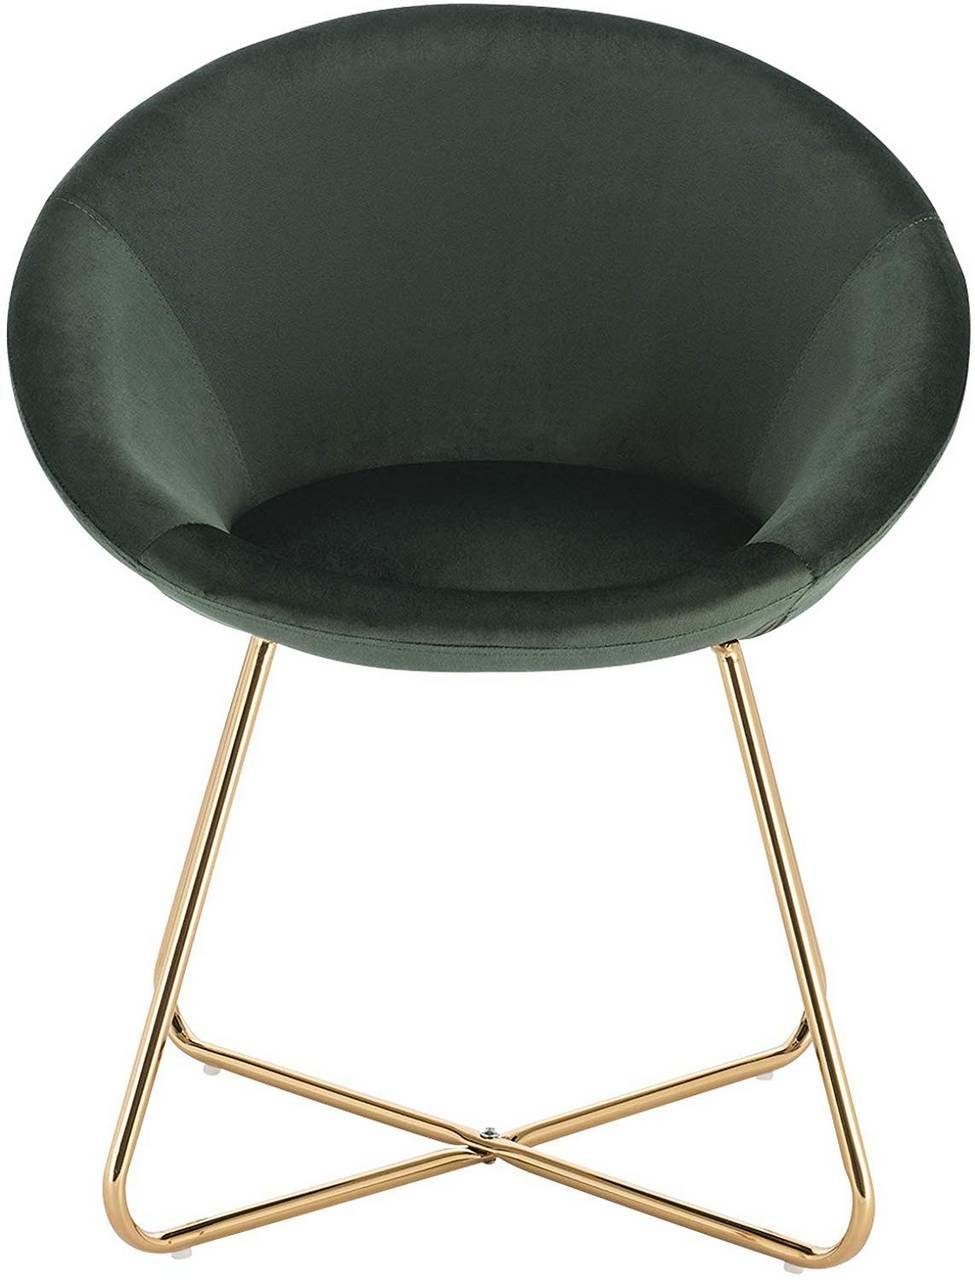 St), Esszimmer goldene Stuhl, Metallbeine Polsterstuhl Woltu Dunkelgrün (1